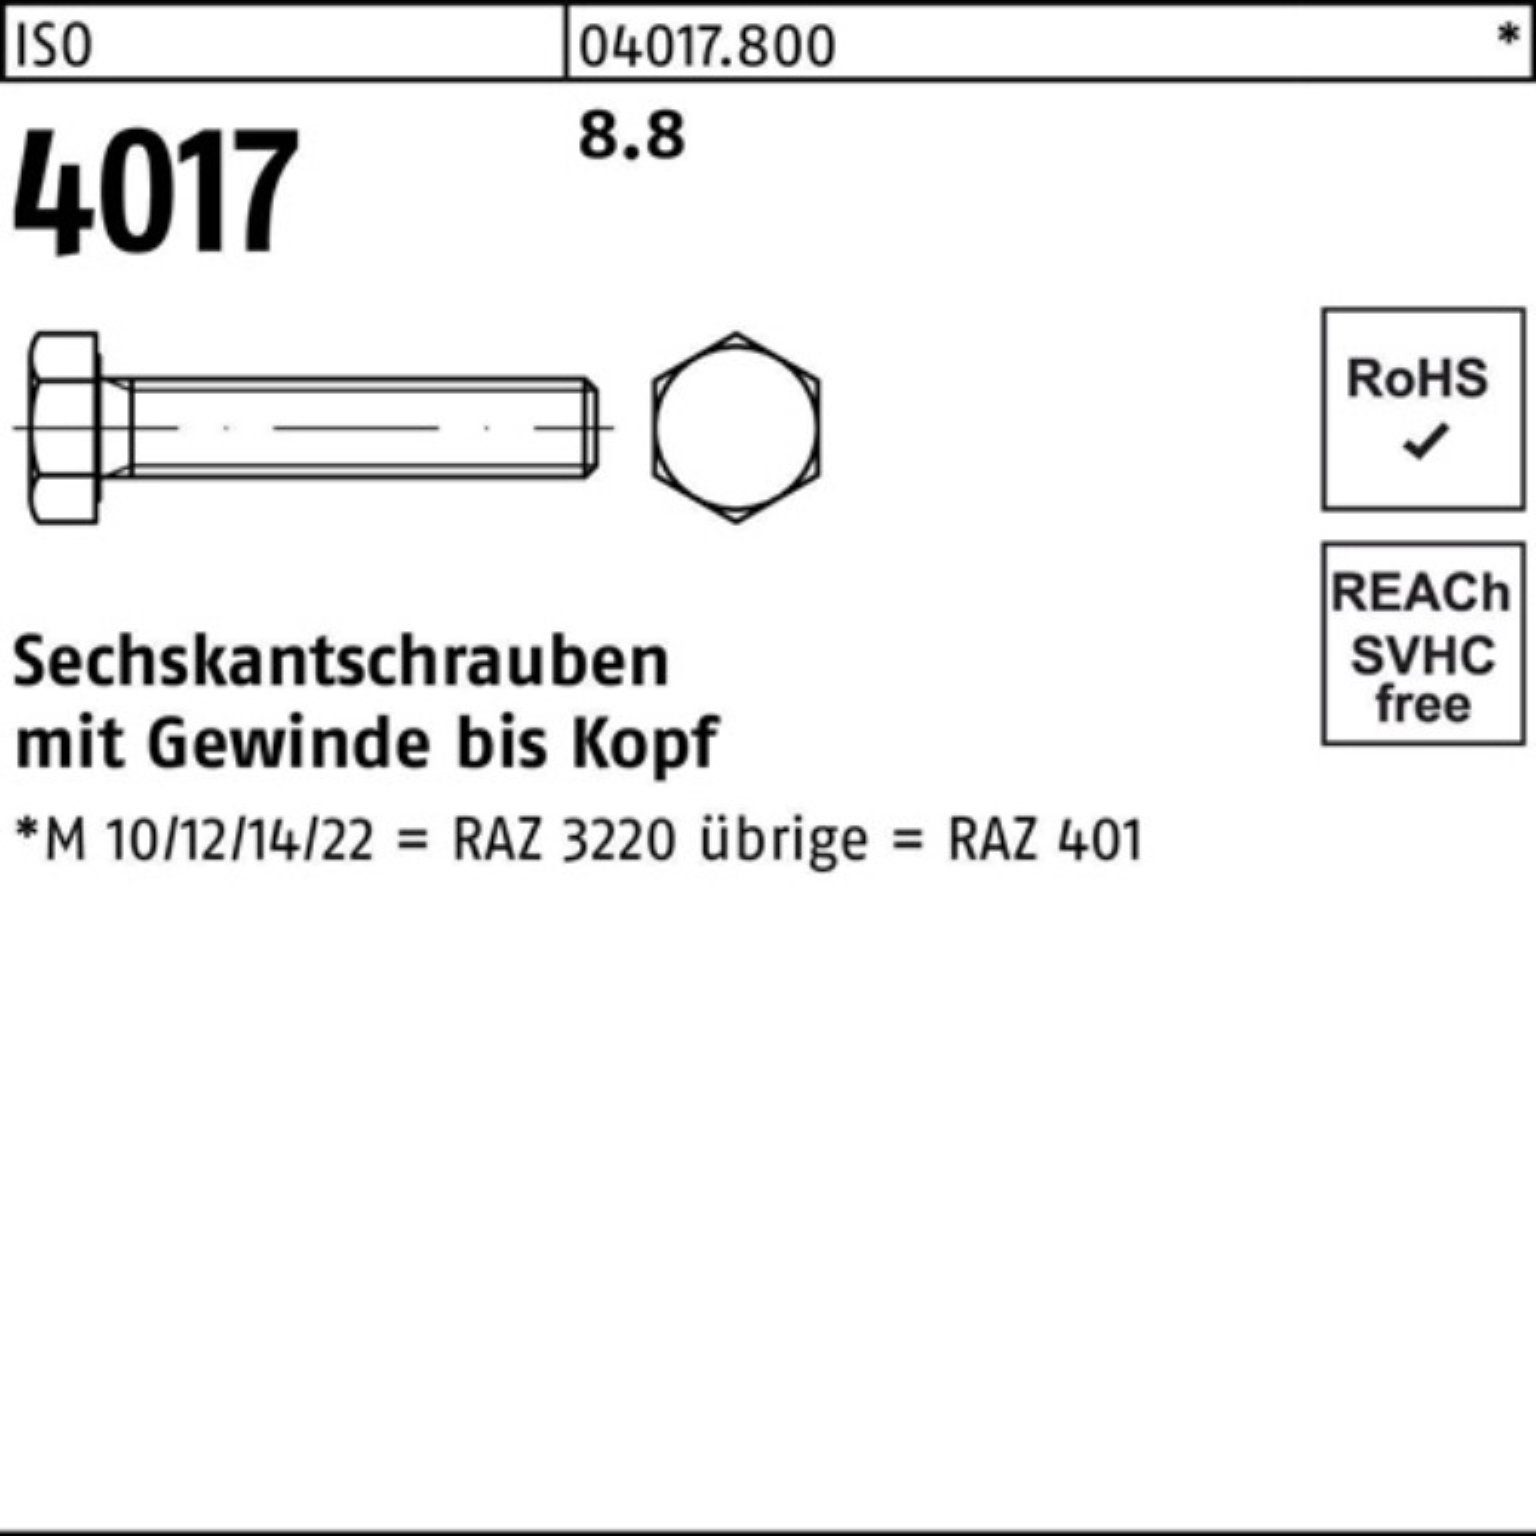 Bufab Sechskantschraube 200er Pack Sechskantschraube Stück 200 401 8.8 45 ISO 4017 ISO VG M5x